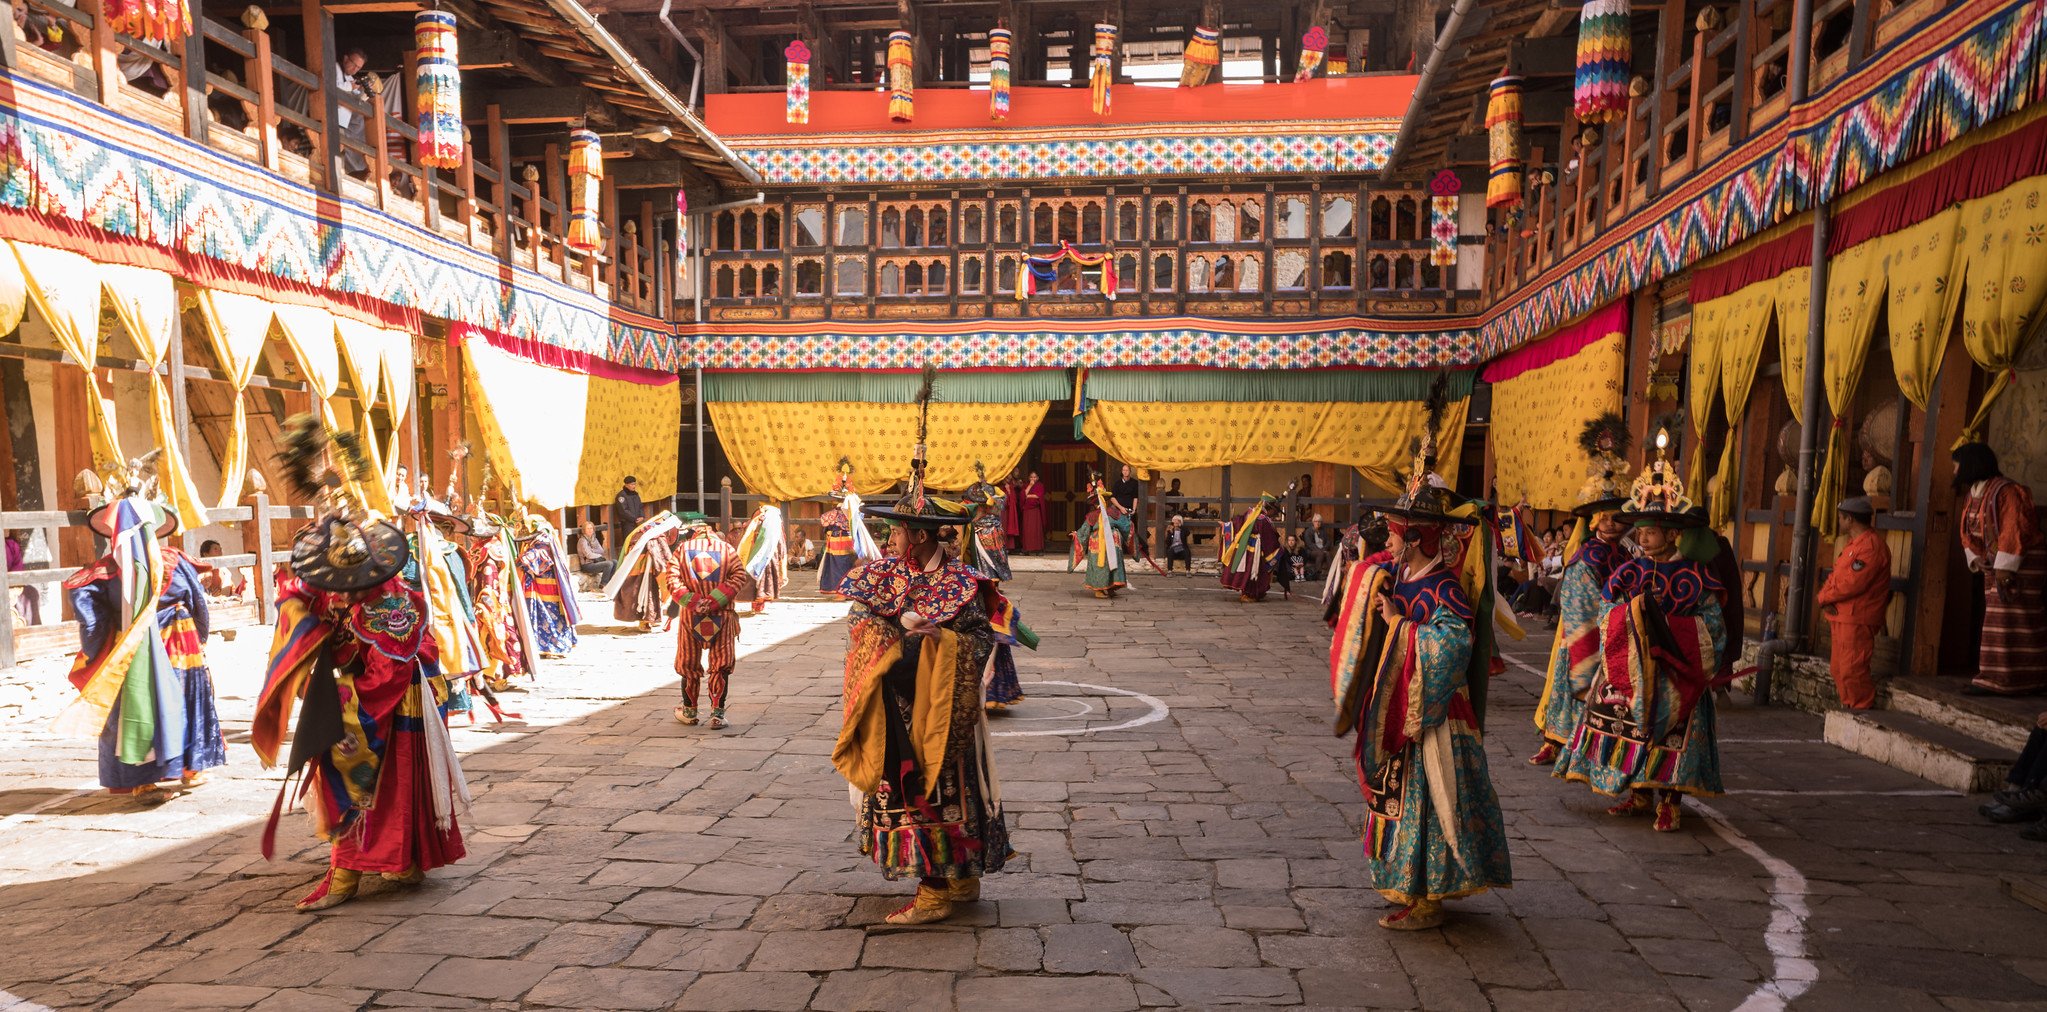 <p>Festival in Bhutan, Image source: Adam Singer</p>